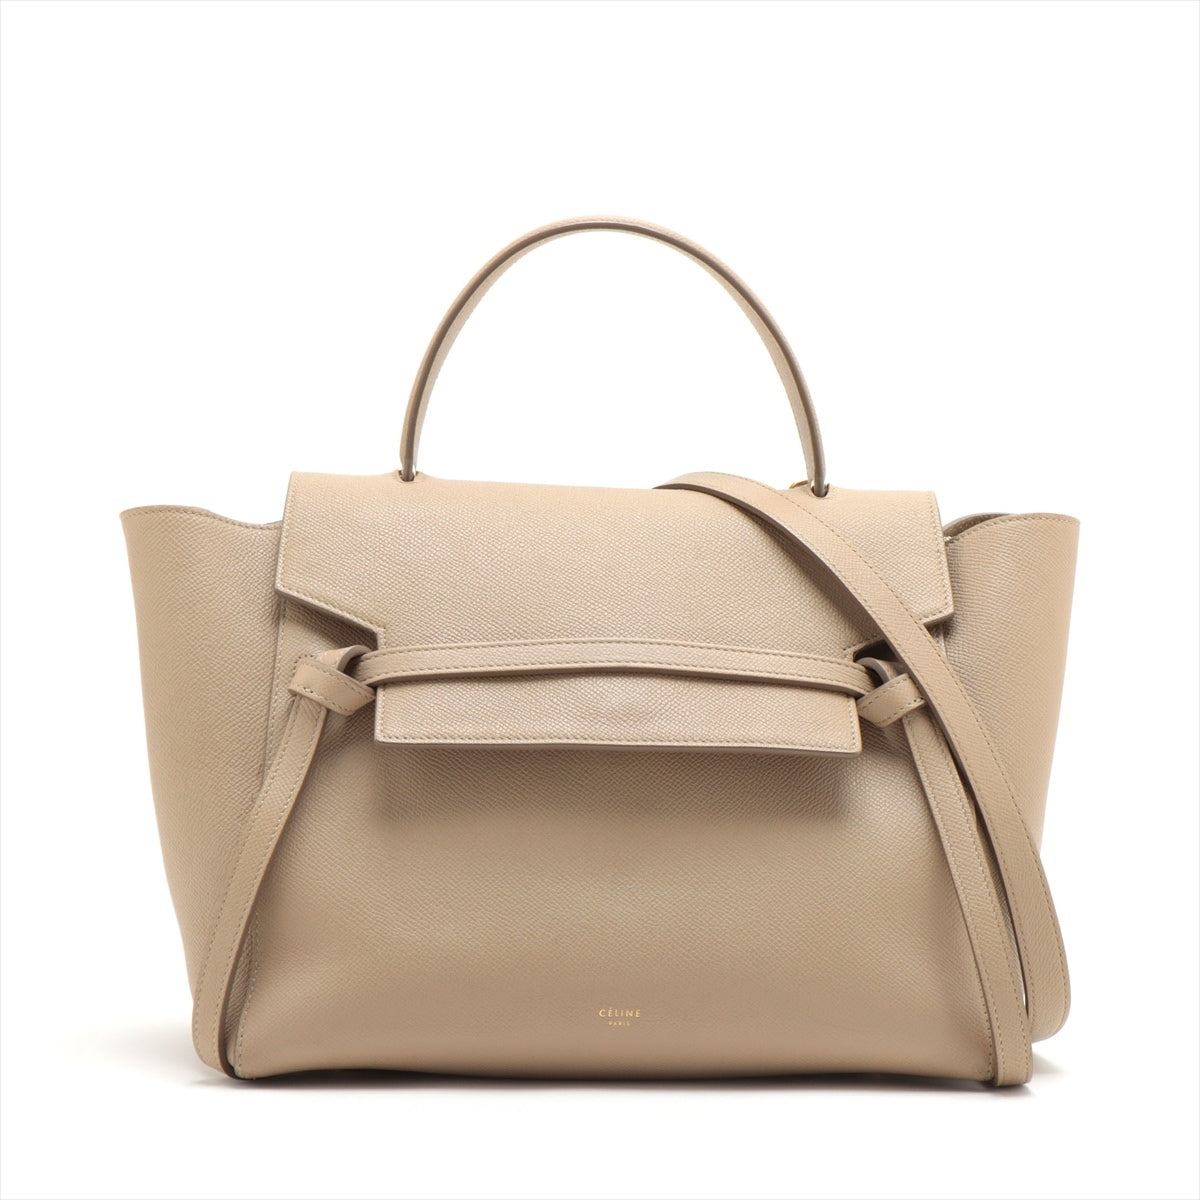 CELINE Belt Bag Leather 2way handbag Beige